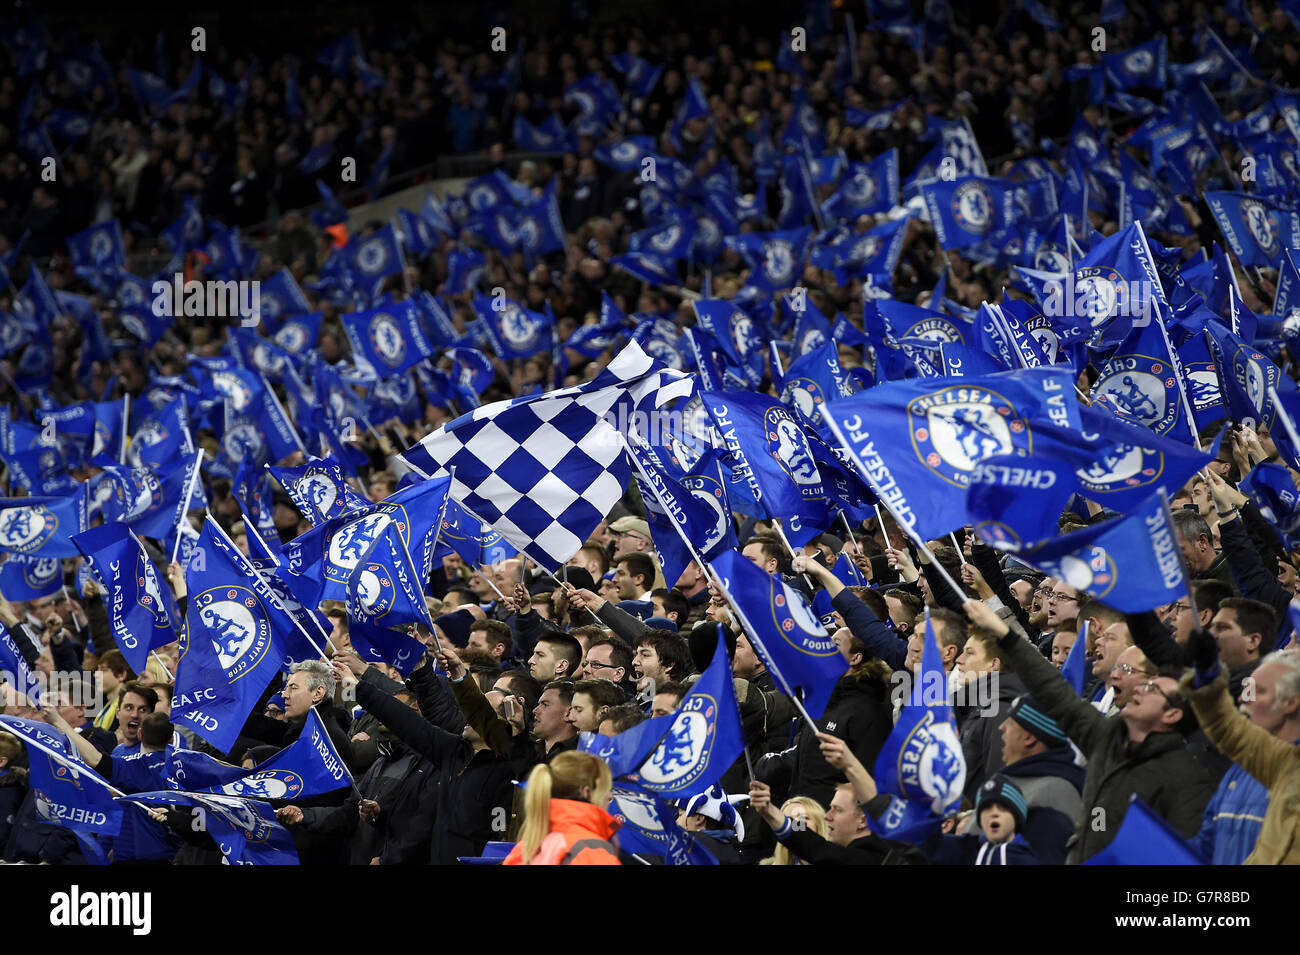 Football - Capital One Cup - finale - Chelsea / Tottenham Hotspur - Wembley  Stadium. Les supporters de Chelsea dans la foule à Wembley Photo Stock -  Alamy